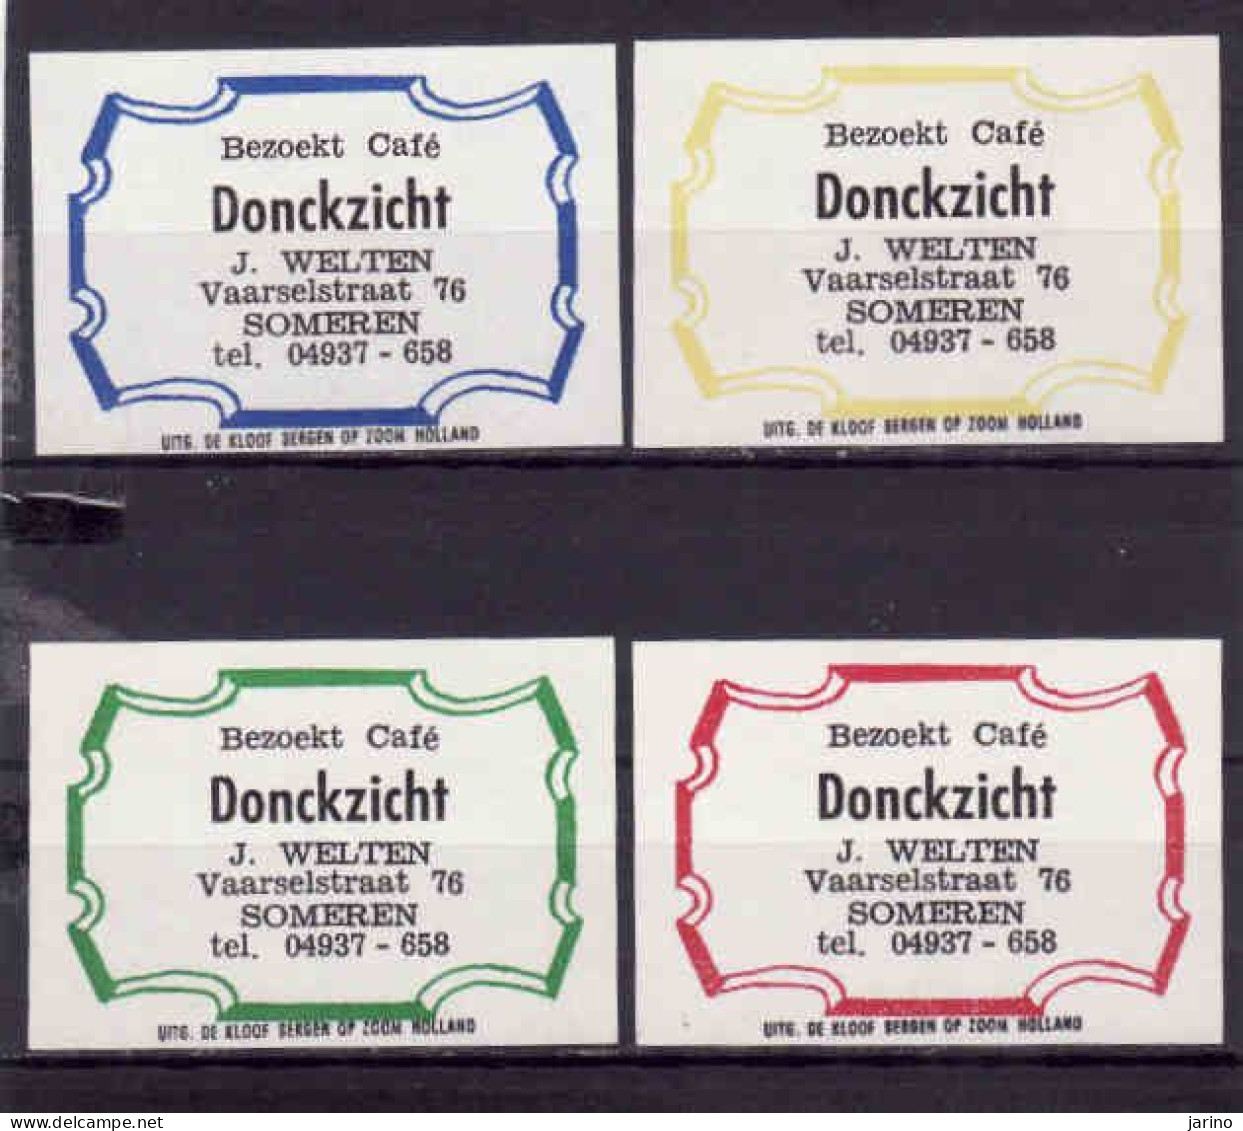 4 Dutch Matchbox Labels, Someren - North Brabant, Cafe Donckzicht, J. Welten, Holland, Netherlands - Zündholzschachteletiketten